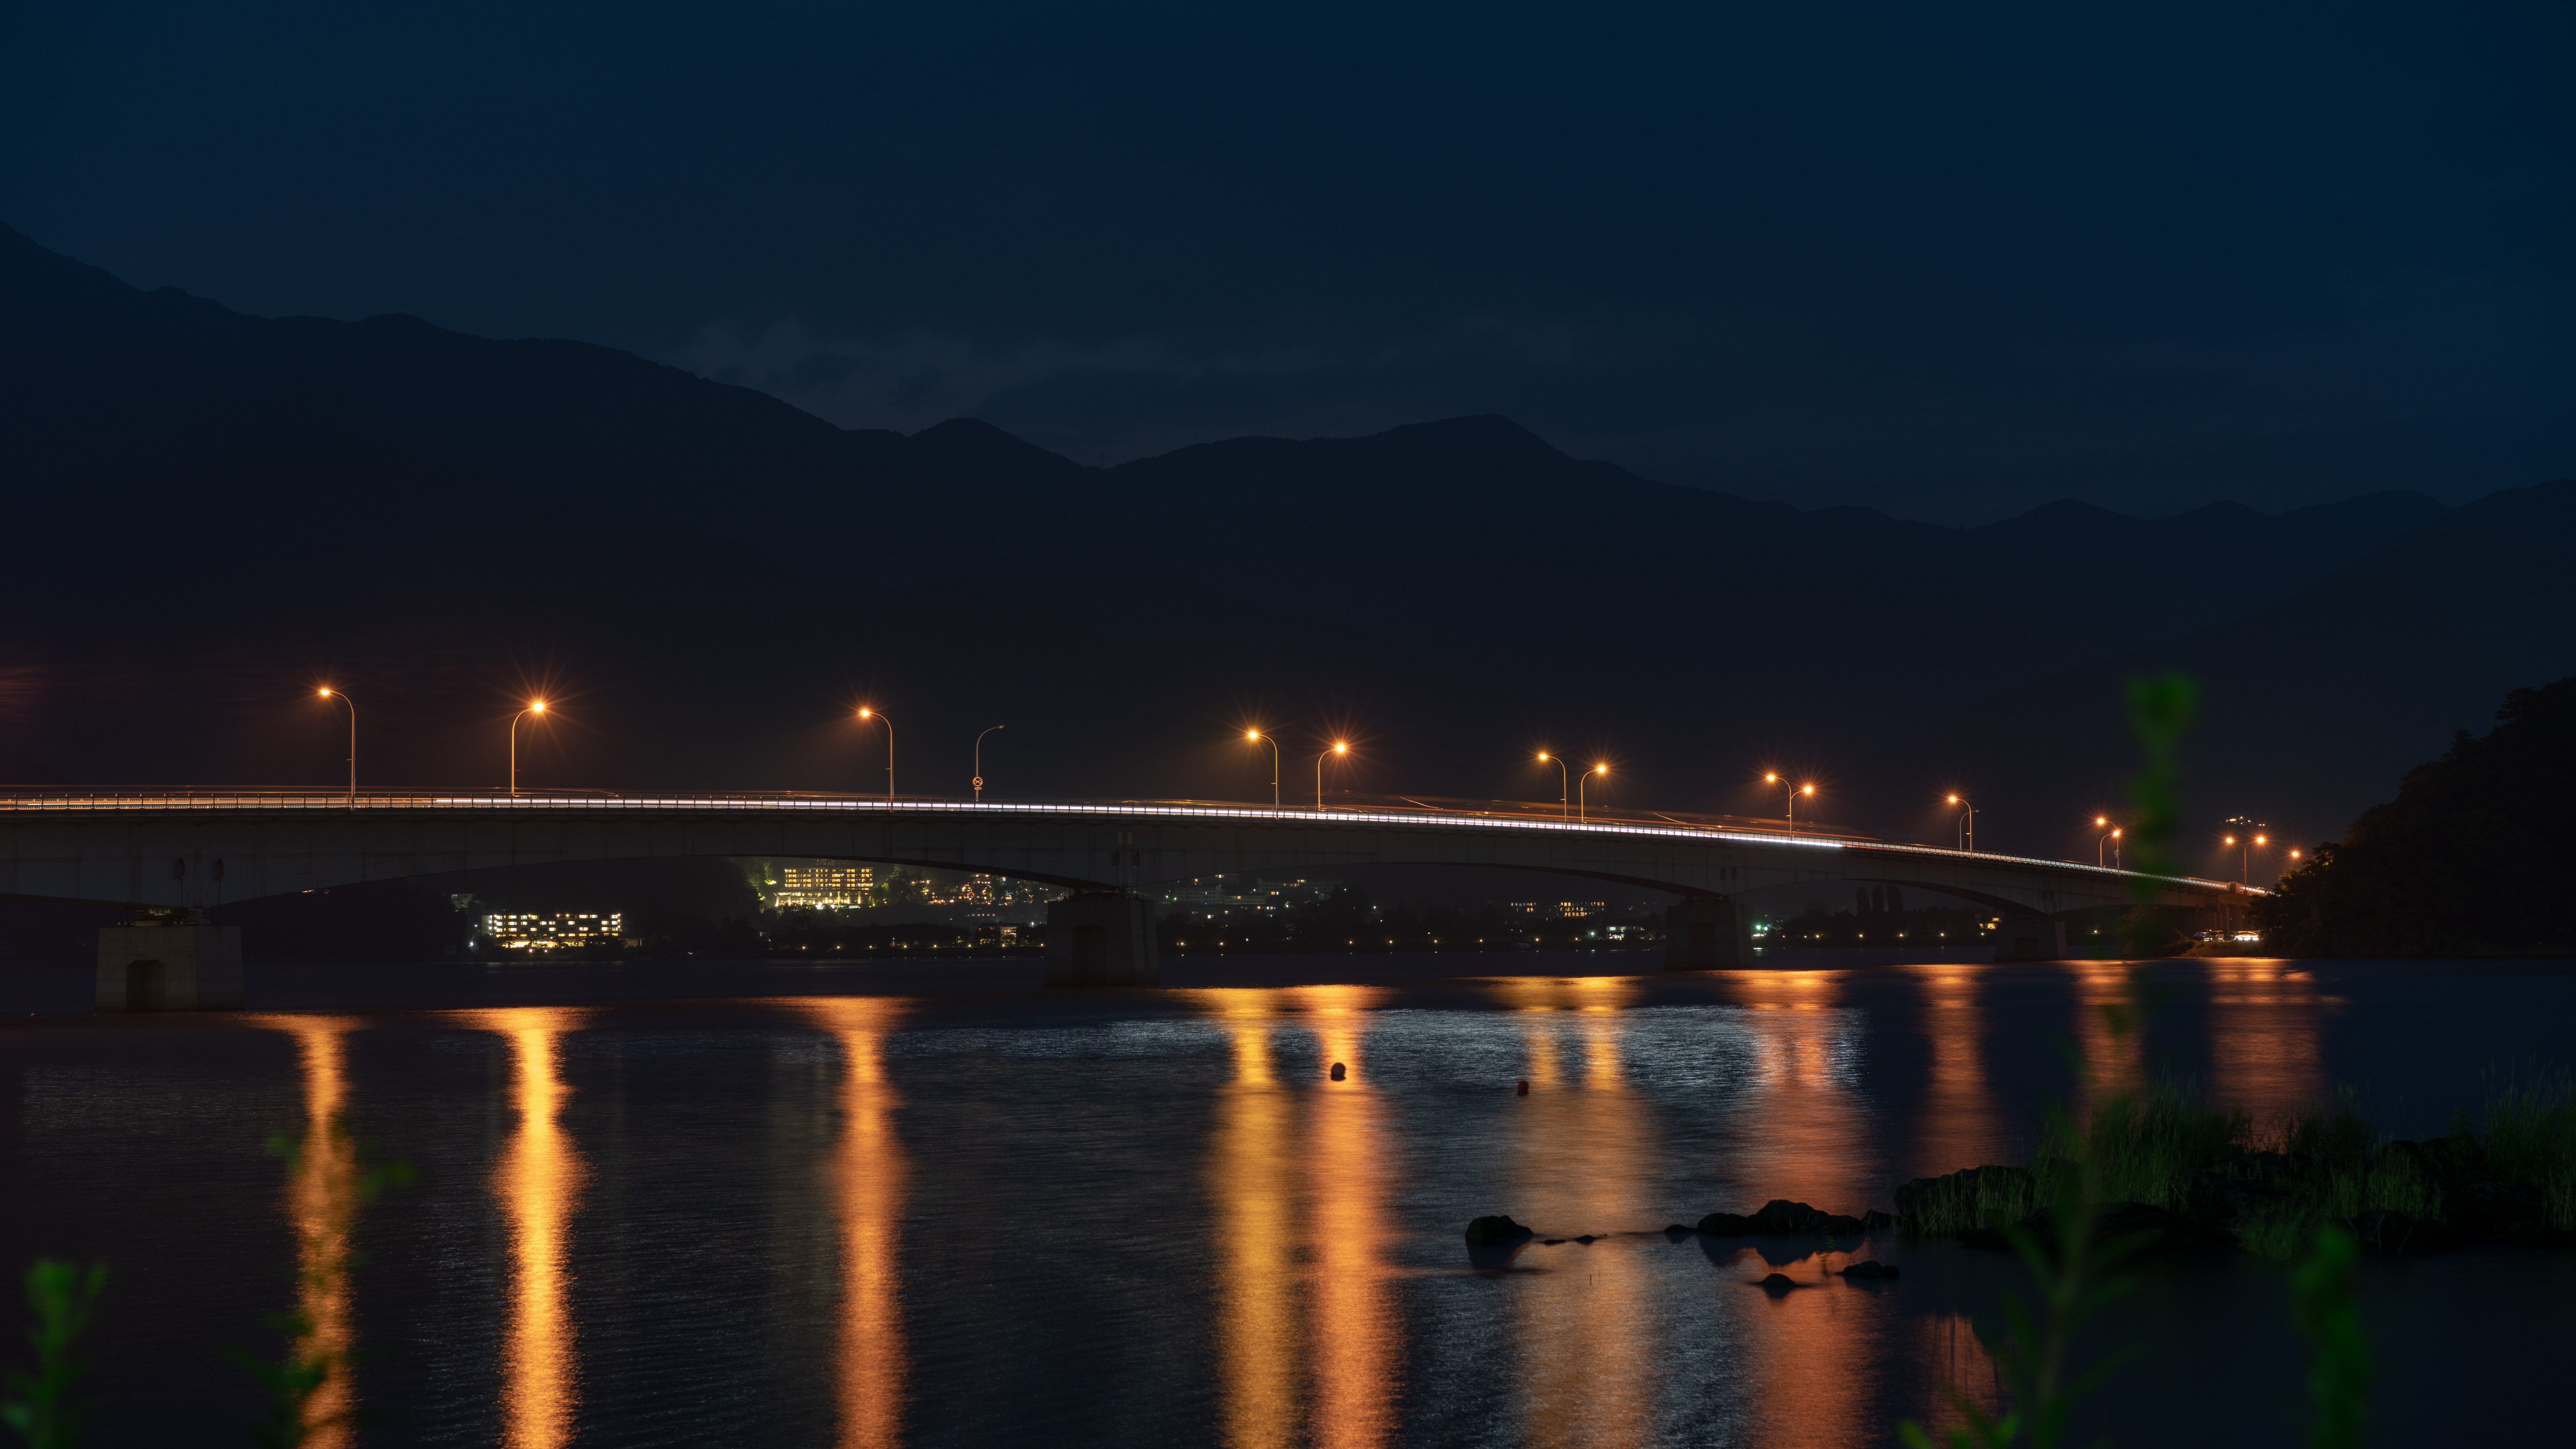 Beleuchtete Brücke Über Wasser Während Der Nacht Night. Wallpaper in 7680x4320 Resolution